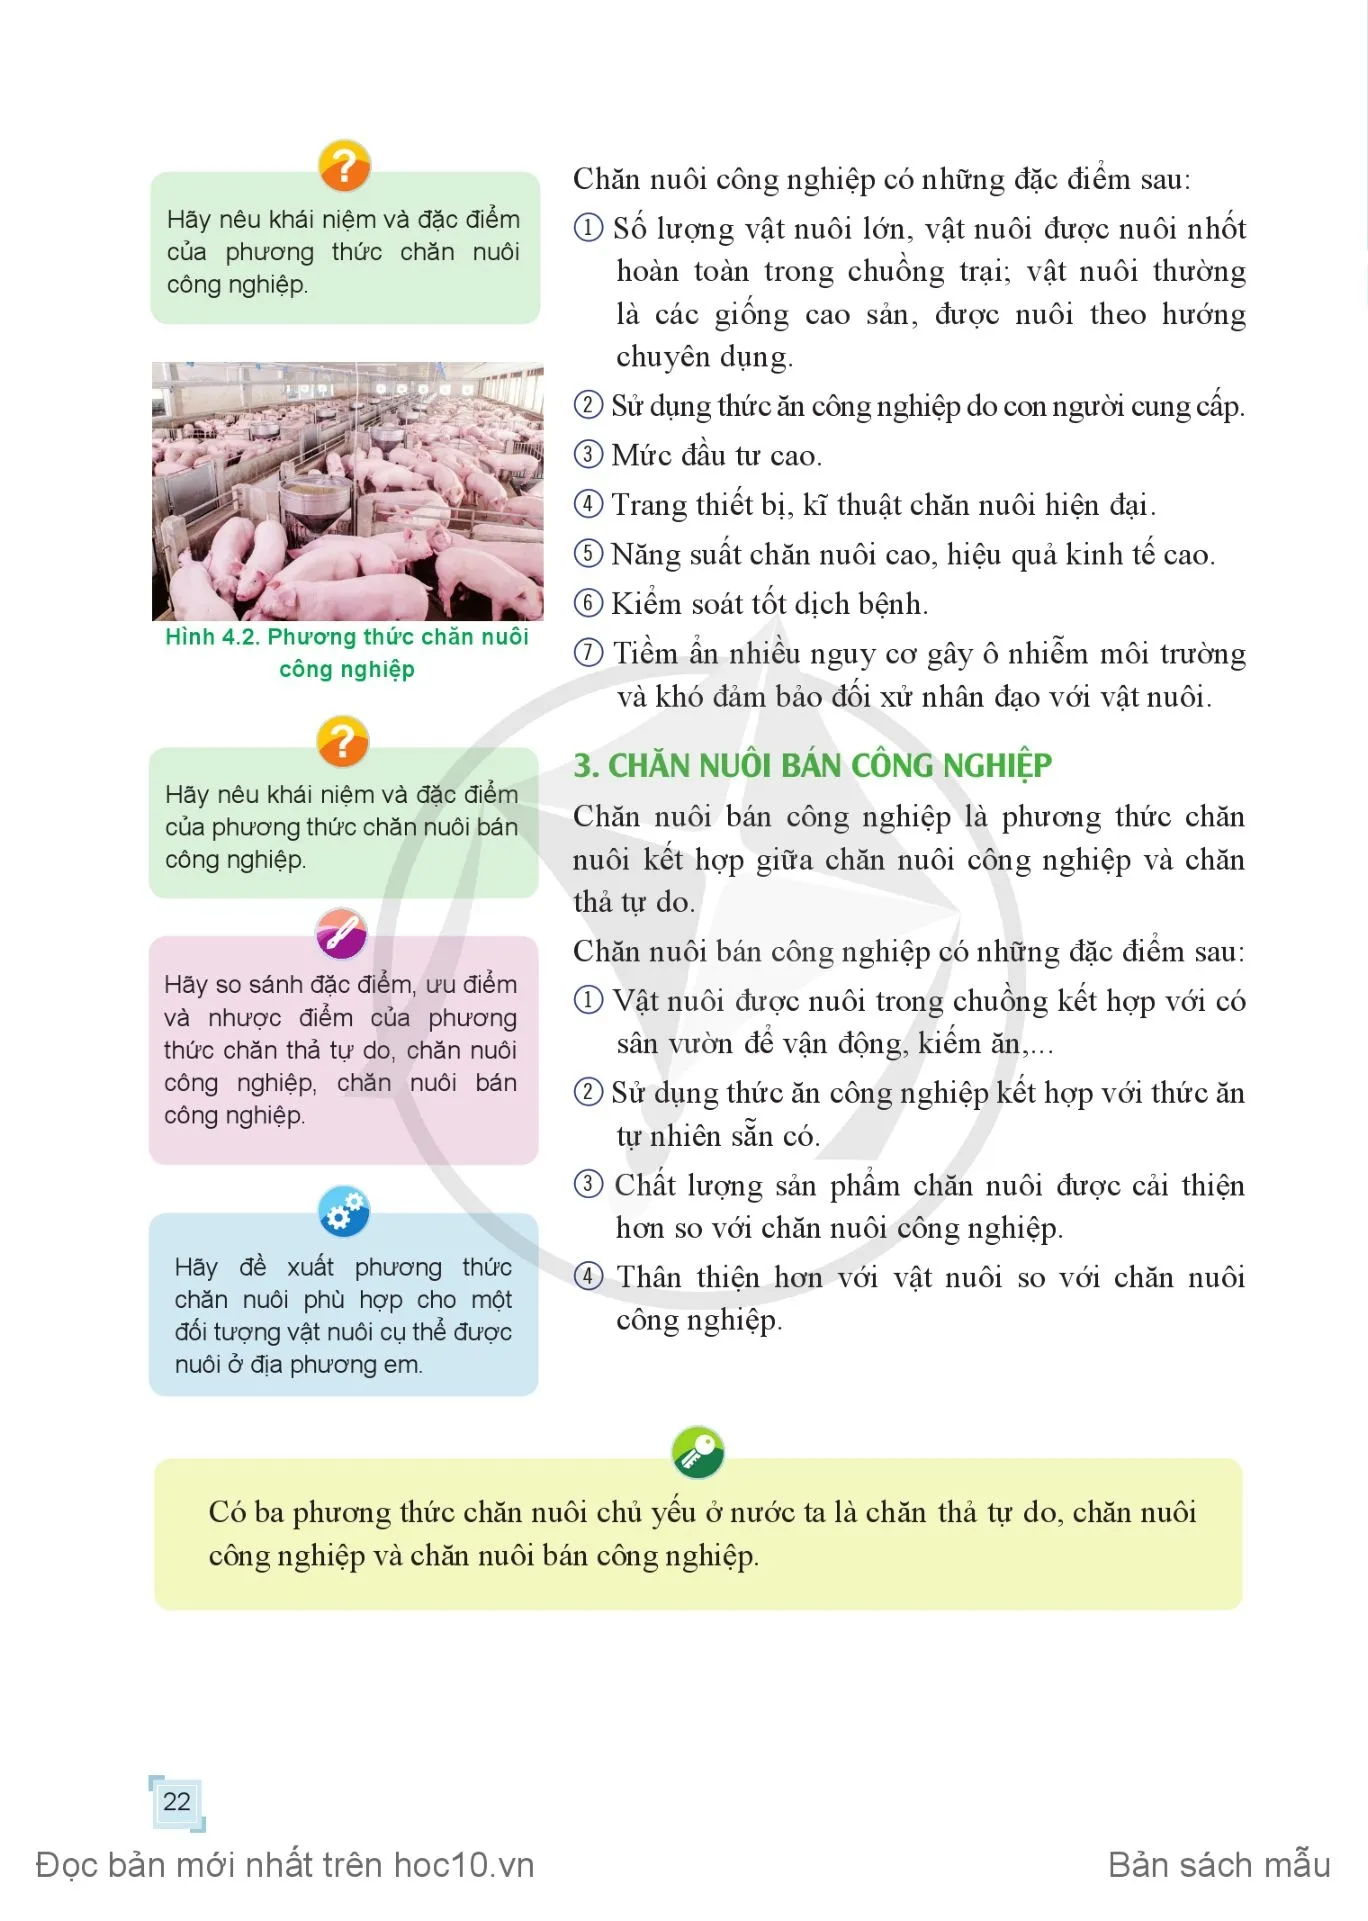 Bài 4. Phương thức chăn nuôi